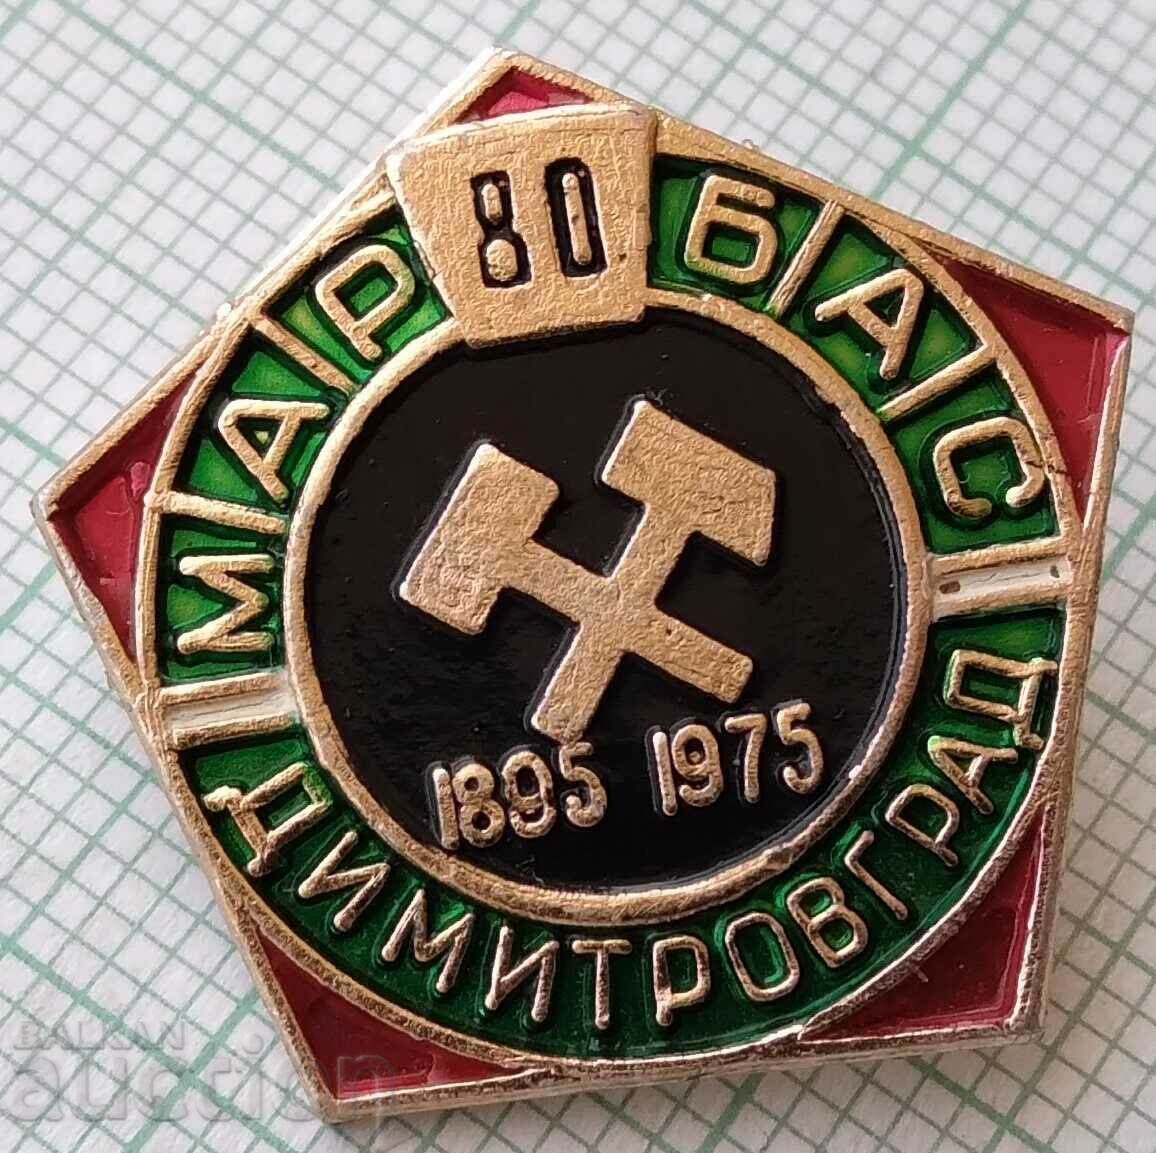 15576 Insigna - 80g mini Marbas Dimitrovgrad 1975.